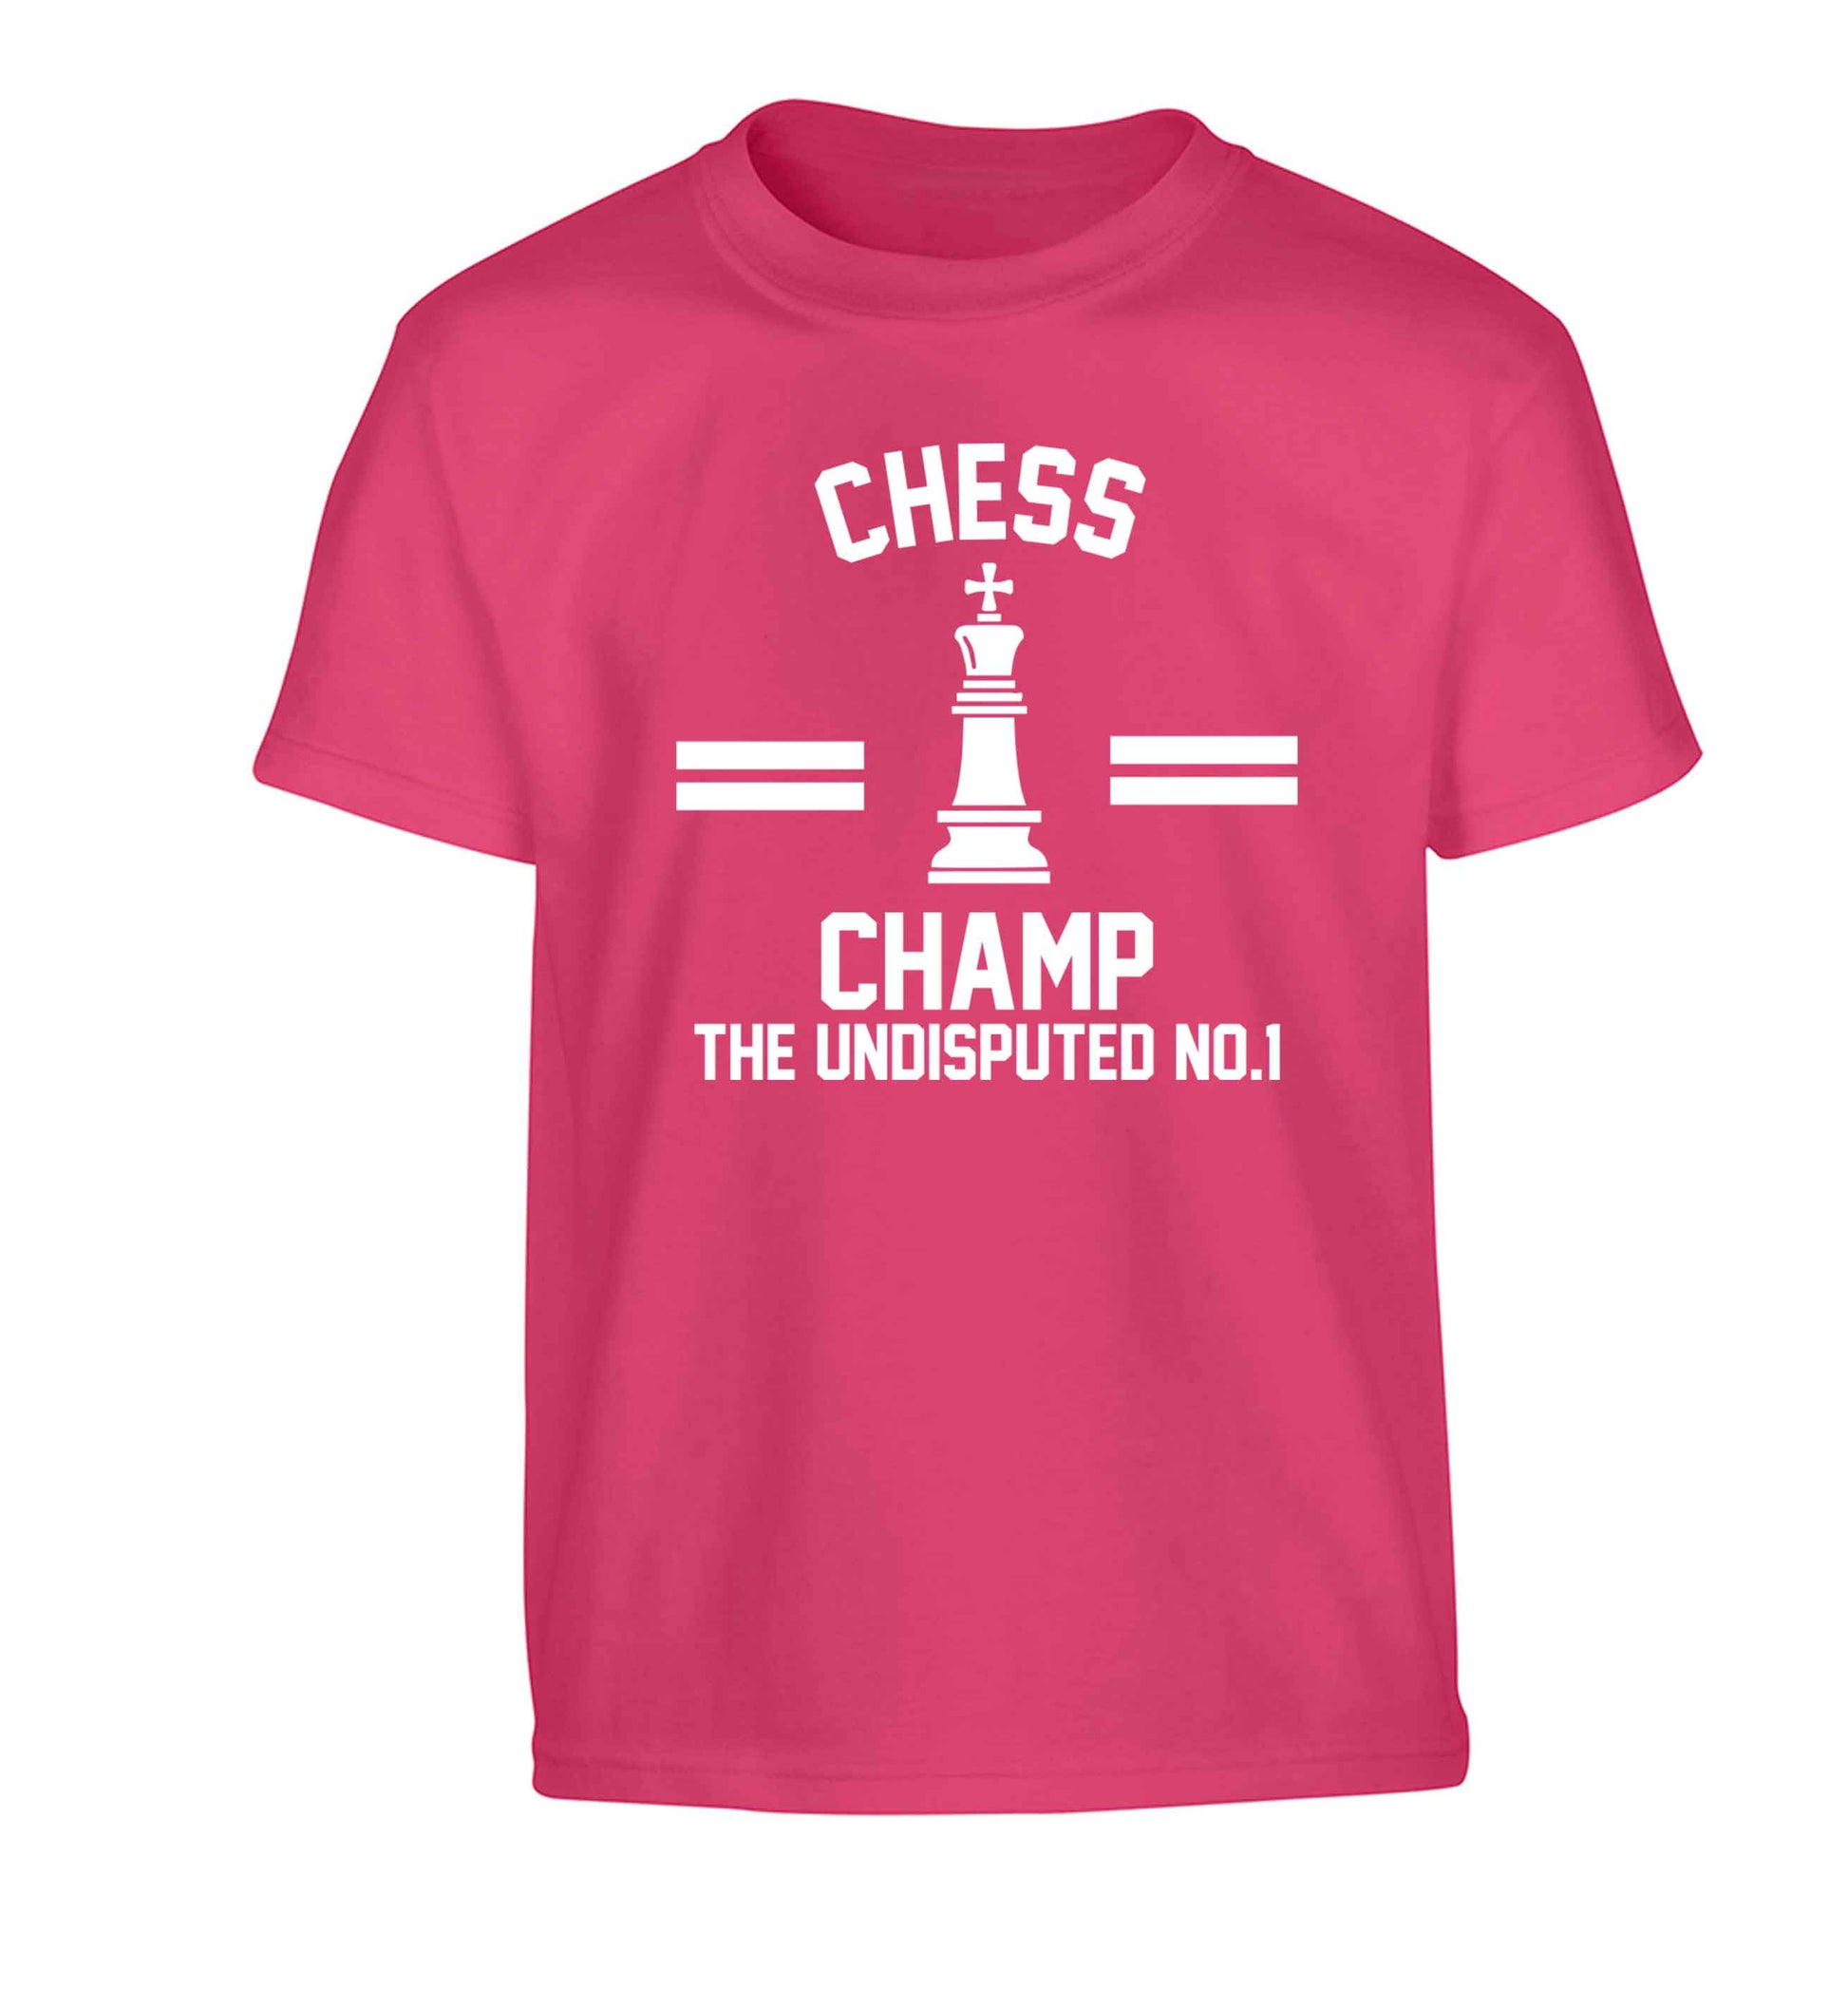 Undisputed chess championship no.1  Children's pink Tshirt 12-13 Years